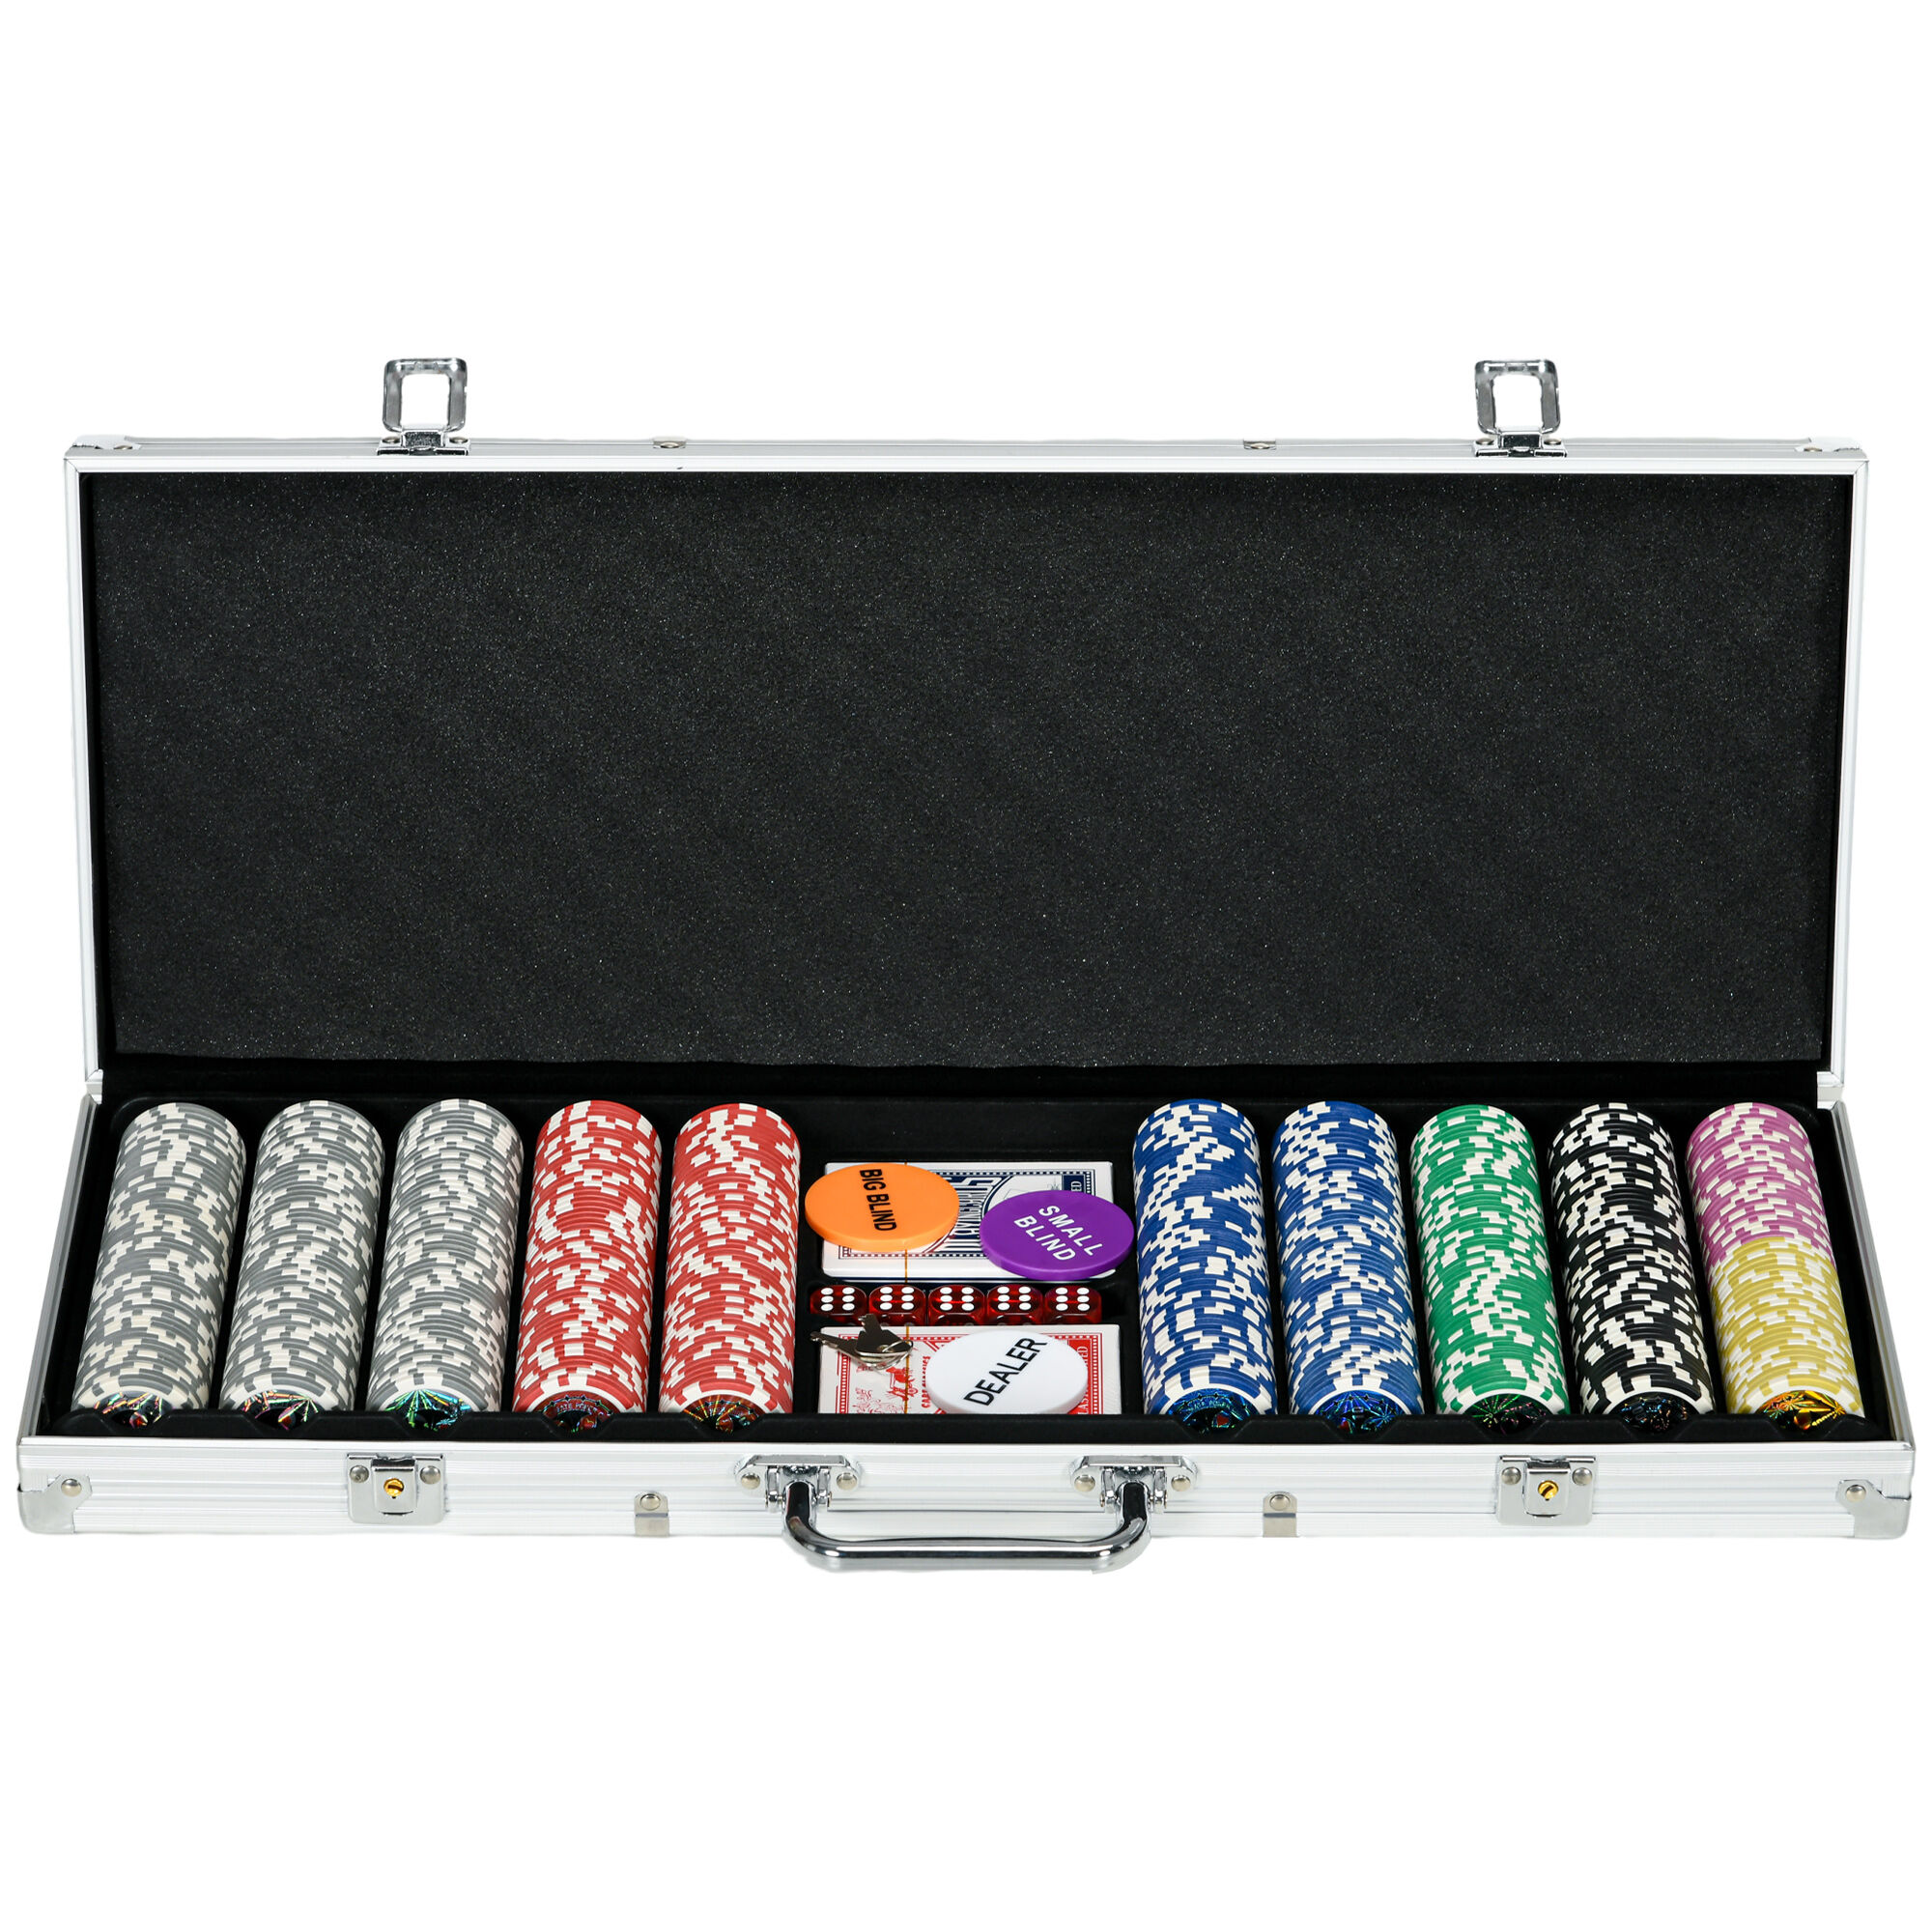 Sportnow Set Poker per 9-10 Giocatori con 500 Fiches, 2 Mazzi di Carte e 5 Dadi, in Alluminio e Poliestere